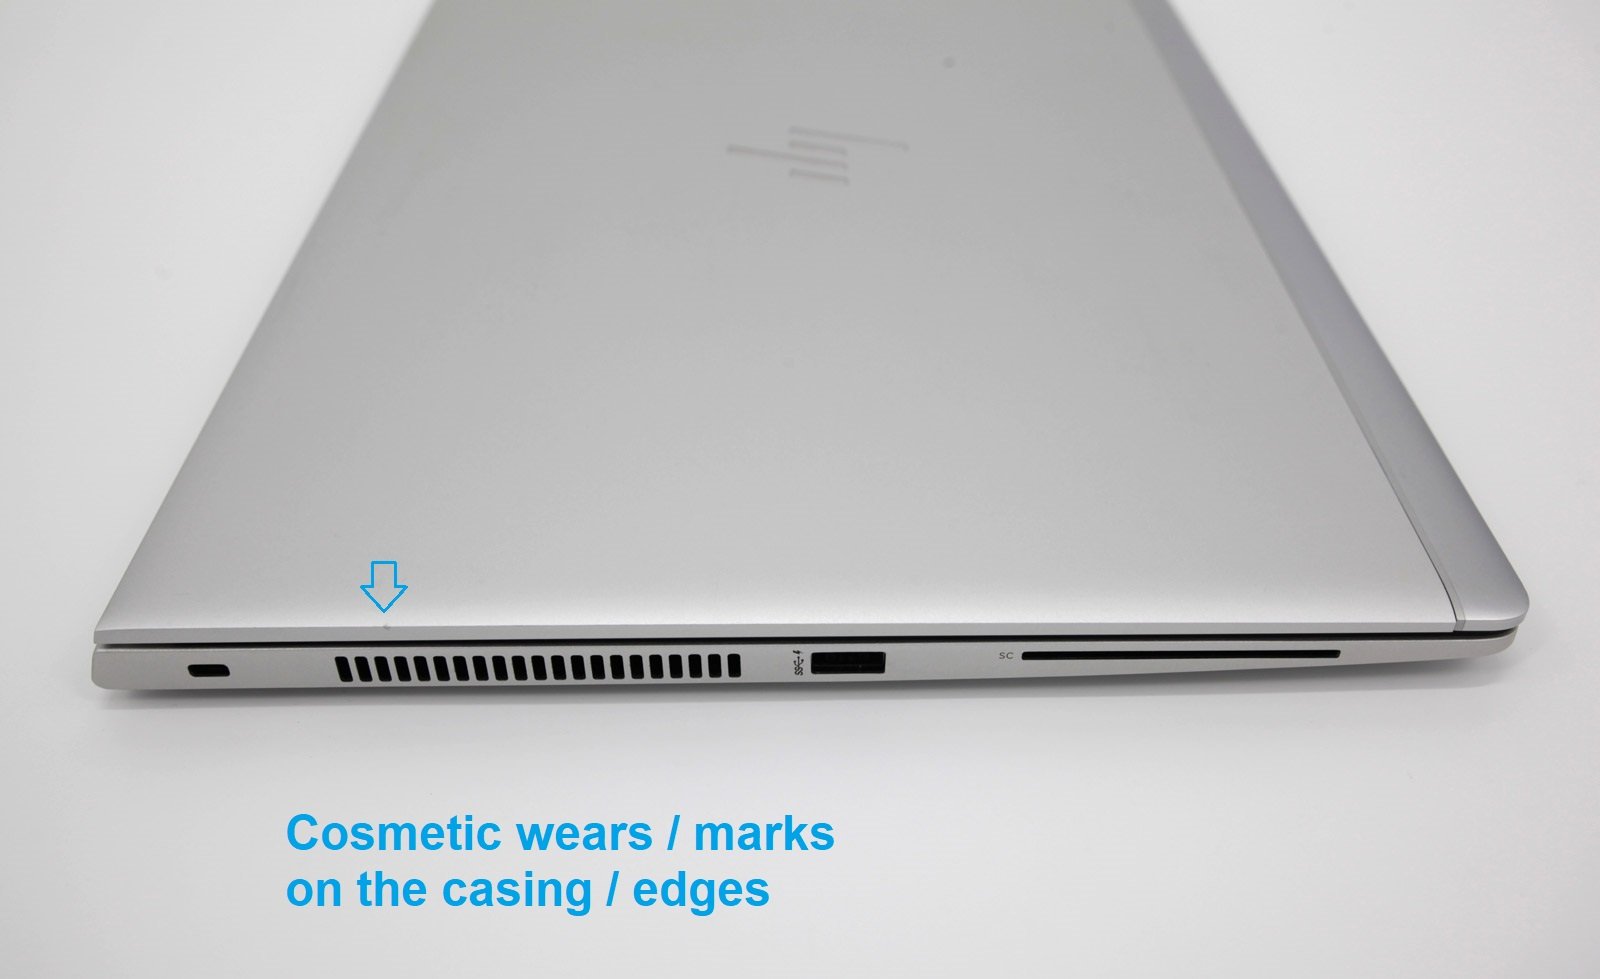 HP EliteBook 850 G5 15.6" Laptop: 8th Gen Core i7, 16GB RAM, 512GB SSD, Warranty - CruiseTech